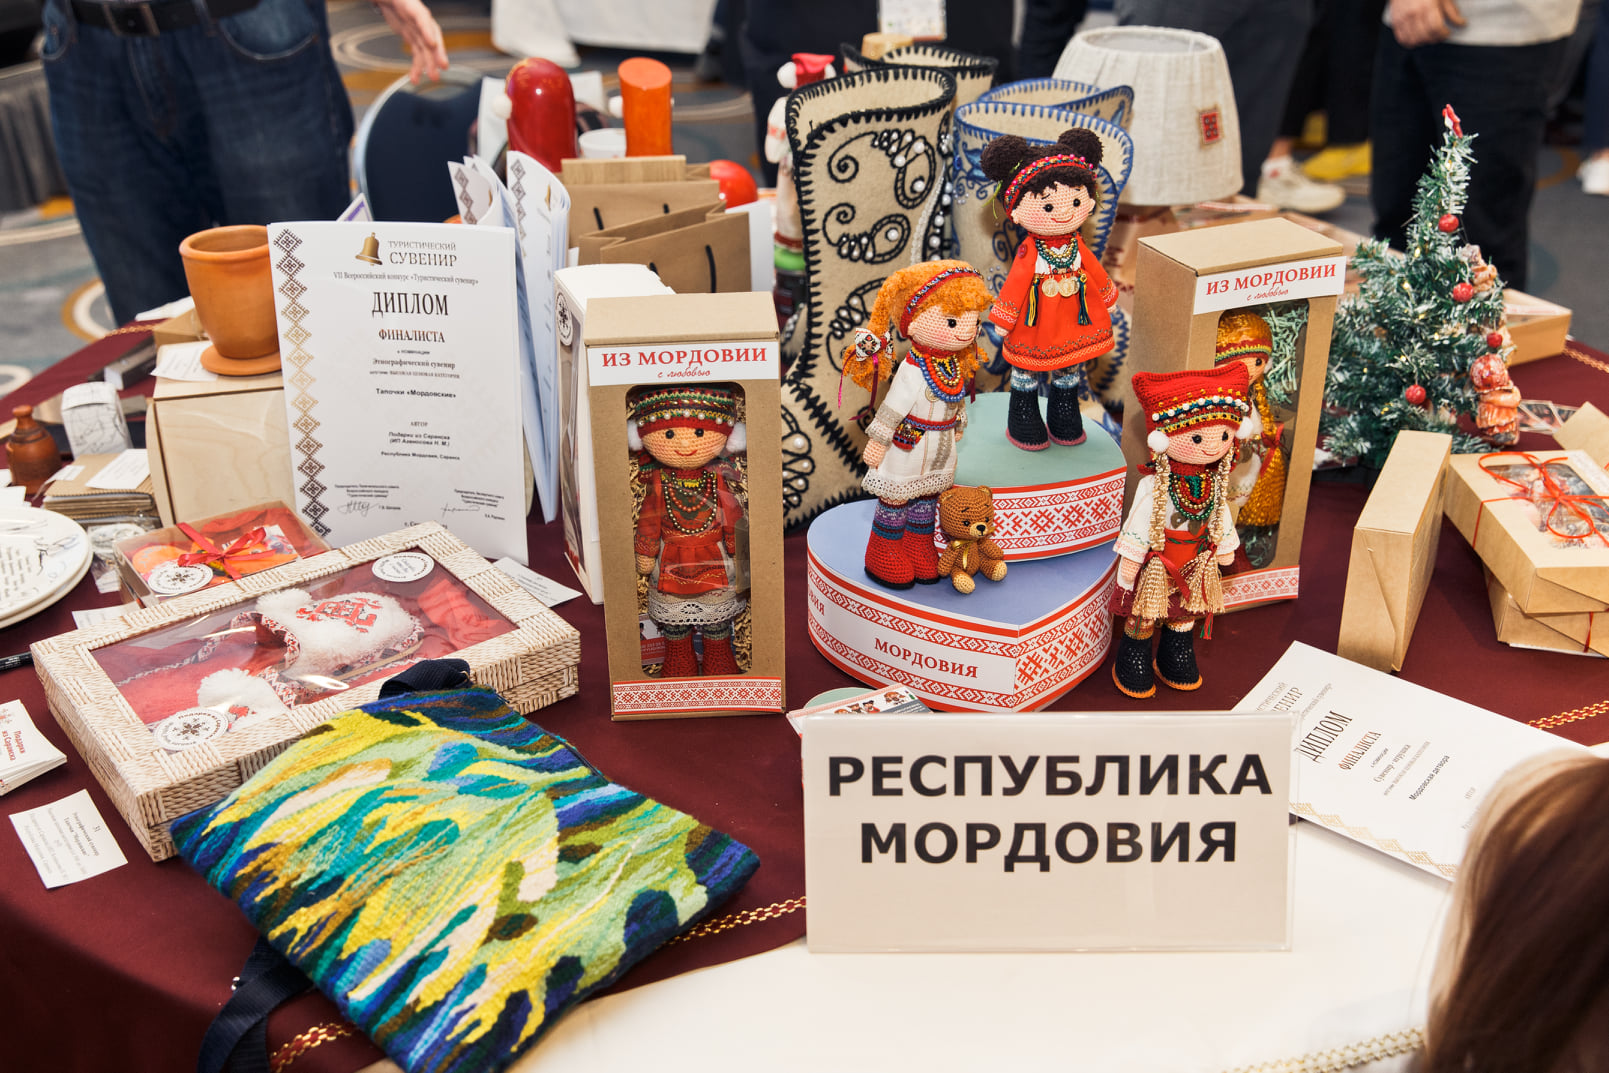 В Саранске завершился всероссийский конкурс туристических сувениров. В финале было представлено 400 изделий из 45 регионов страны. Владимирцы не только удивили местной продукцией, но и вернулись домой с заслуженными наградами.